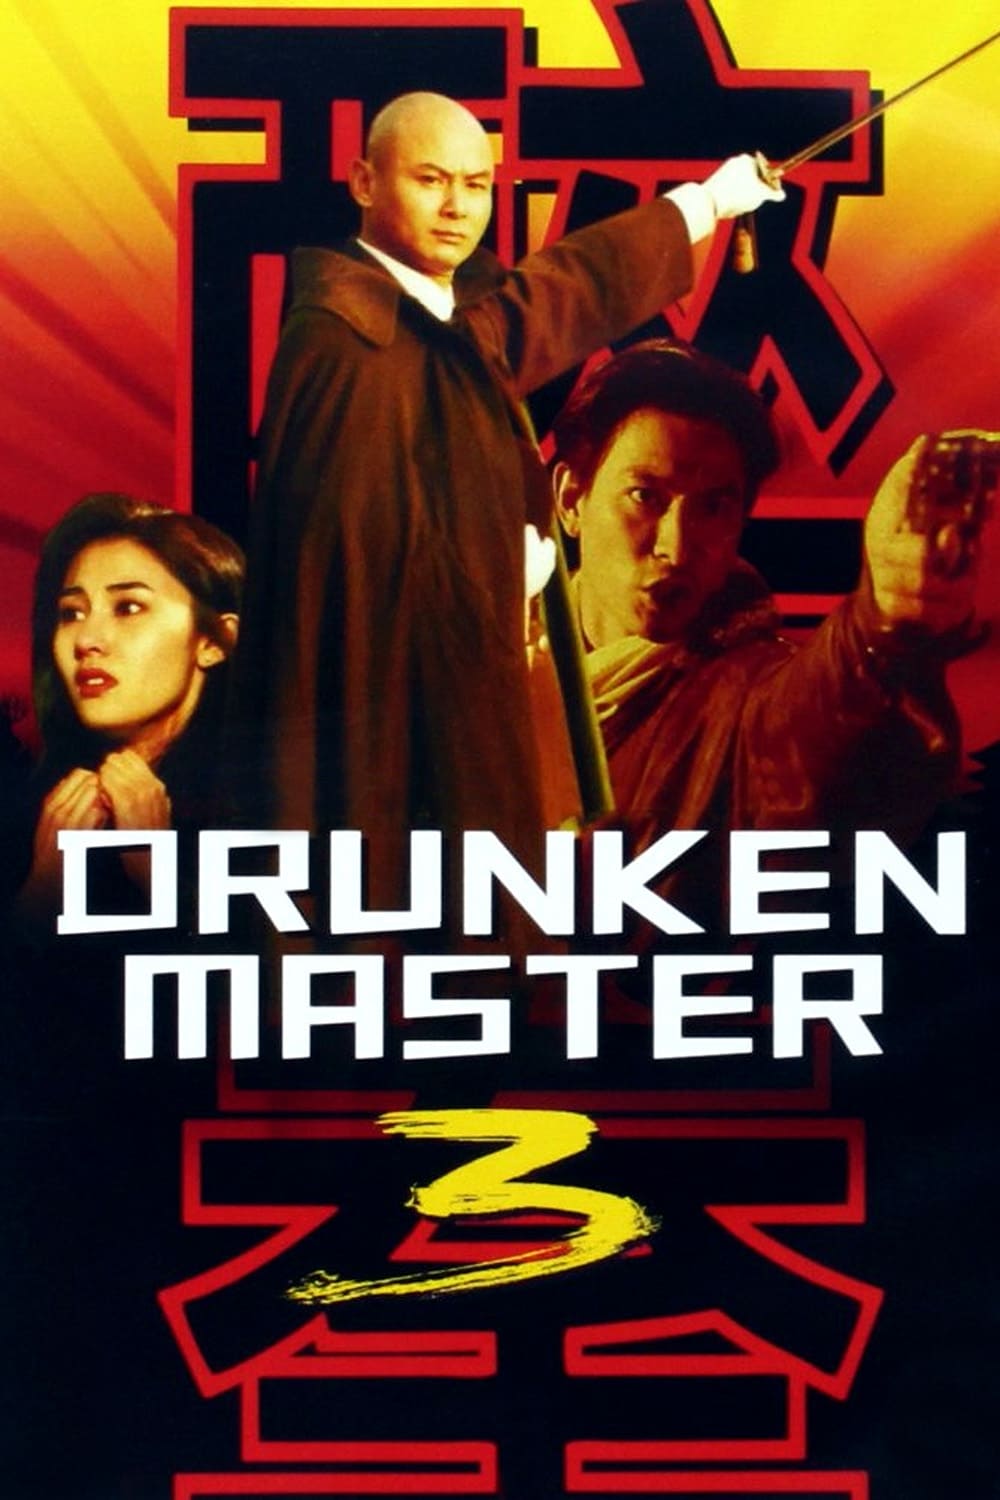 Drunken Master III (1994)